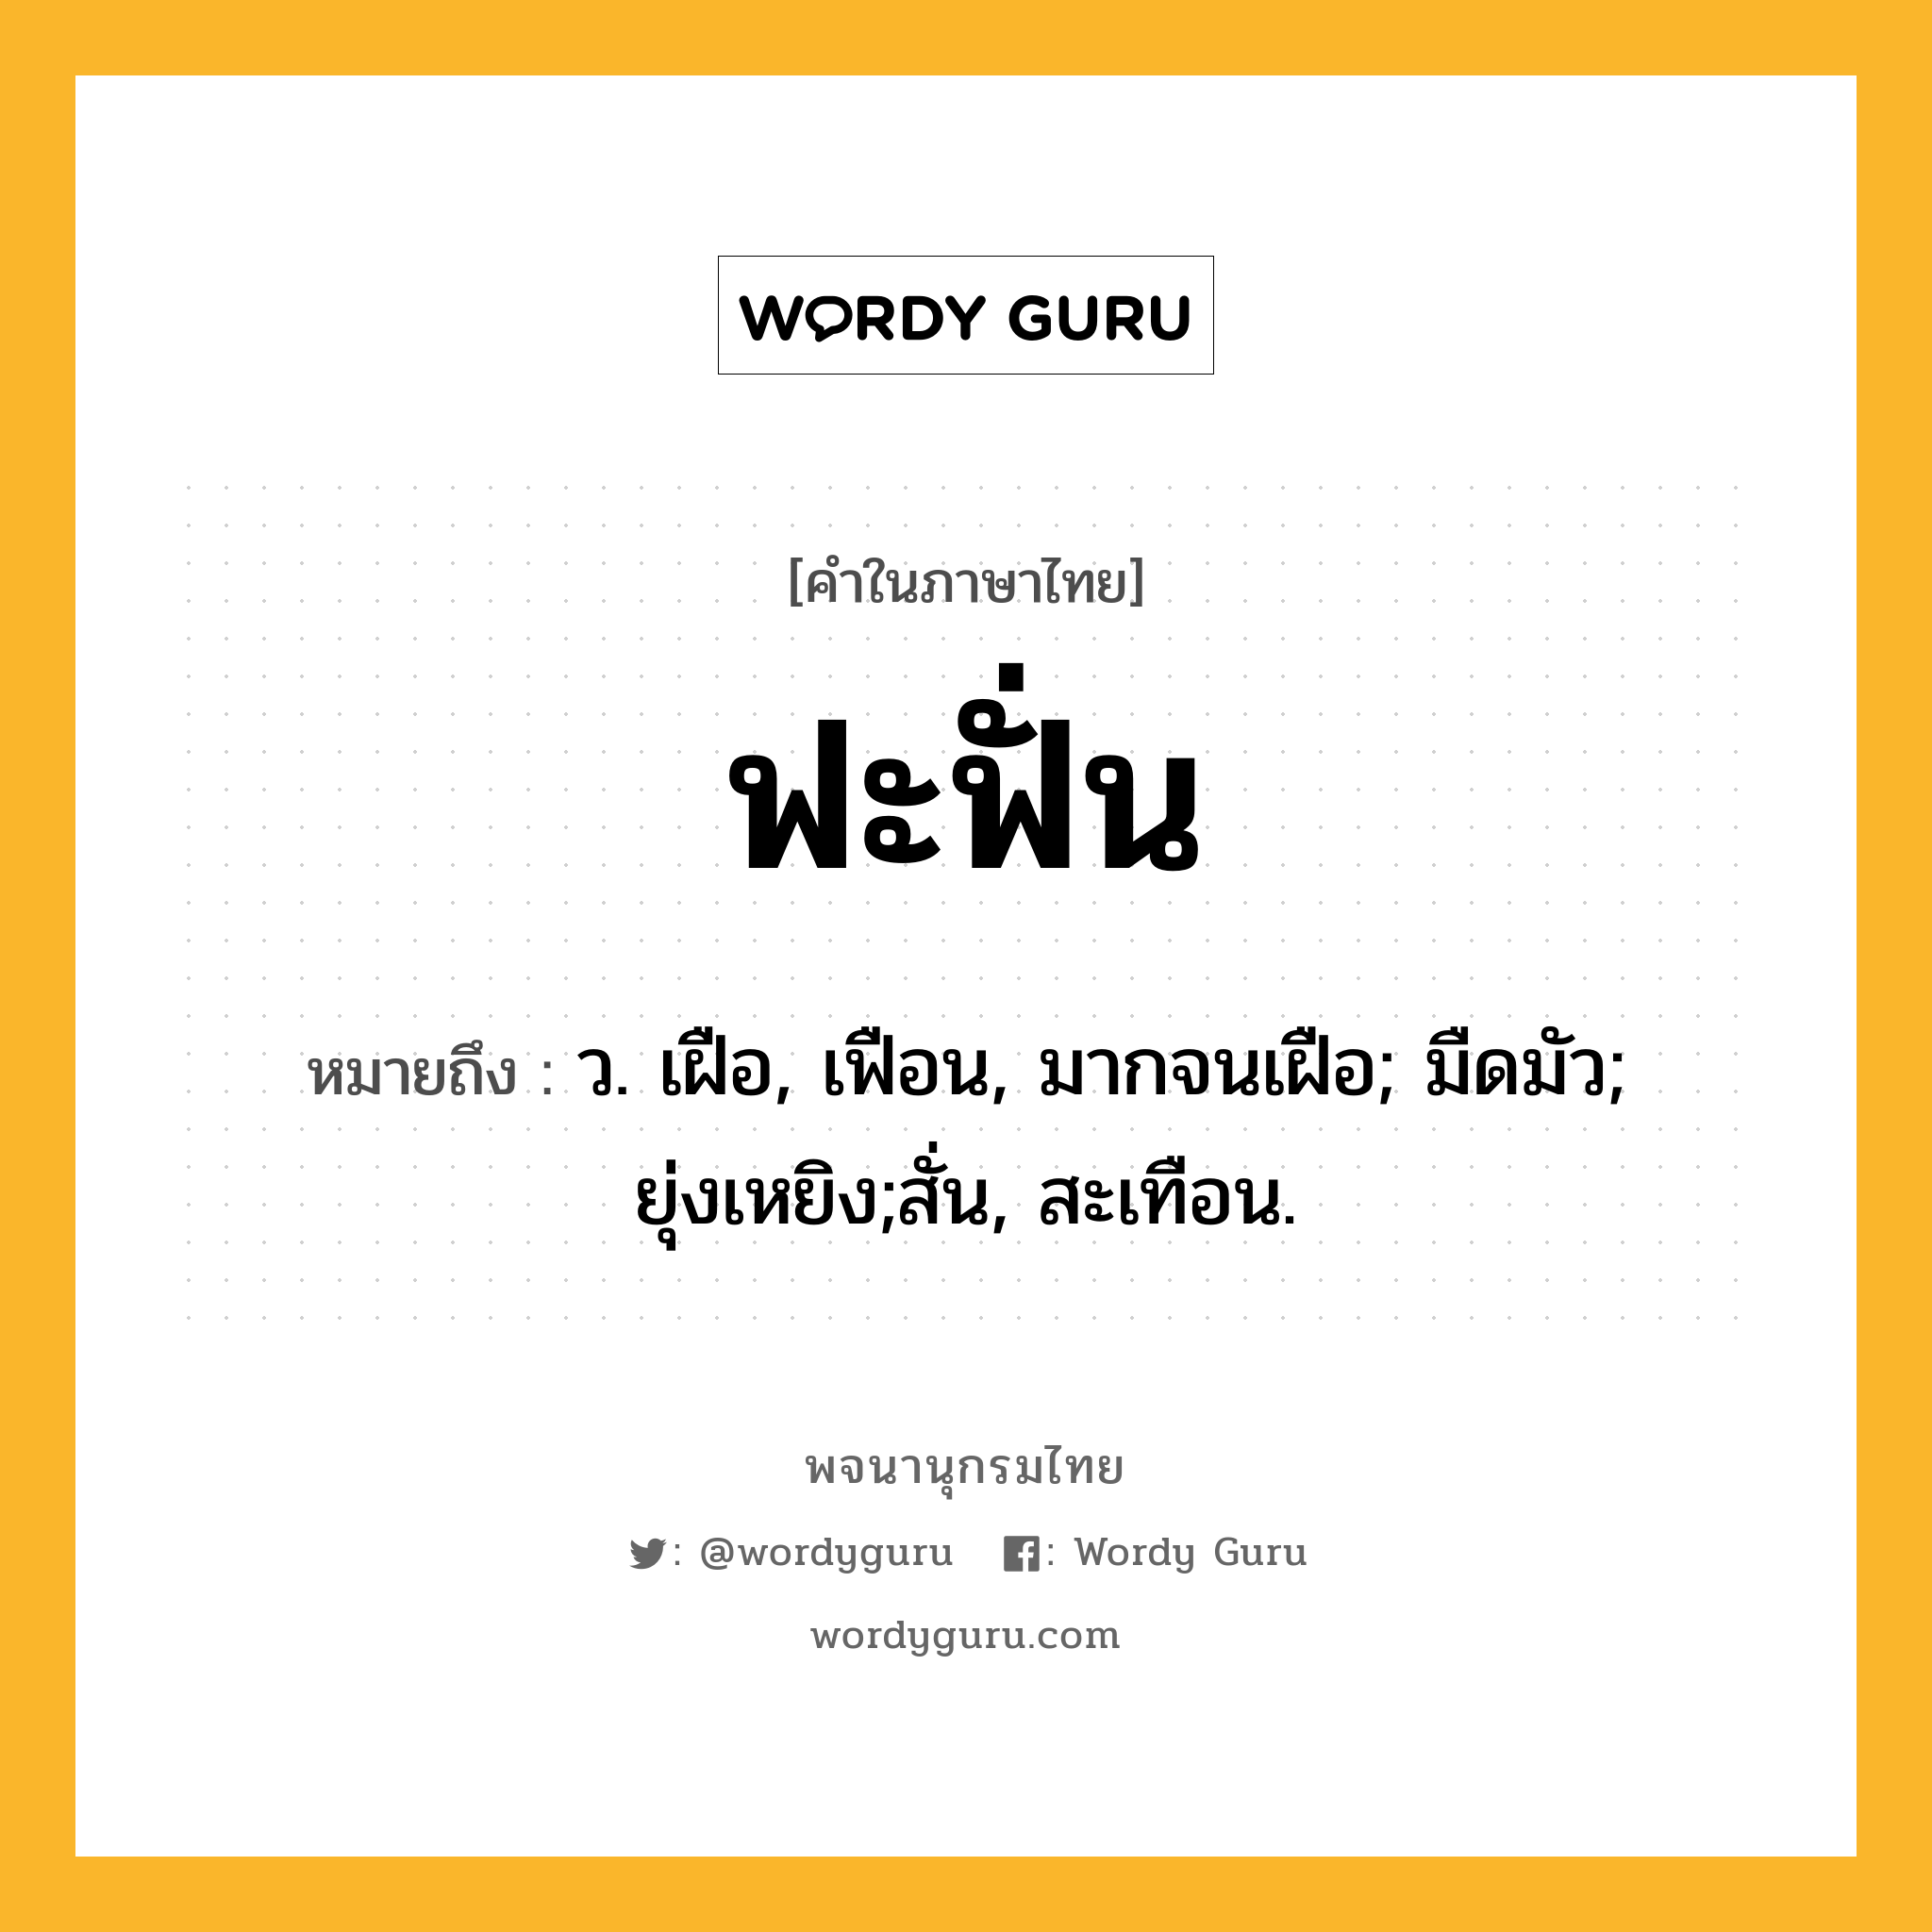 ฟะฟั่น ความหมาย หมายถึงอะไร?, คำในภาษาไทย ฟะฟั่น หมายถึง ว. เฝือ, เฟือน, มากจนเฝือ; มืดมัว; ยุ่งเหยิง;สั่น, สะเทือน.